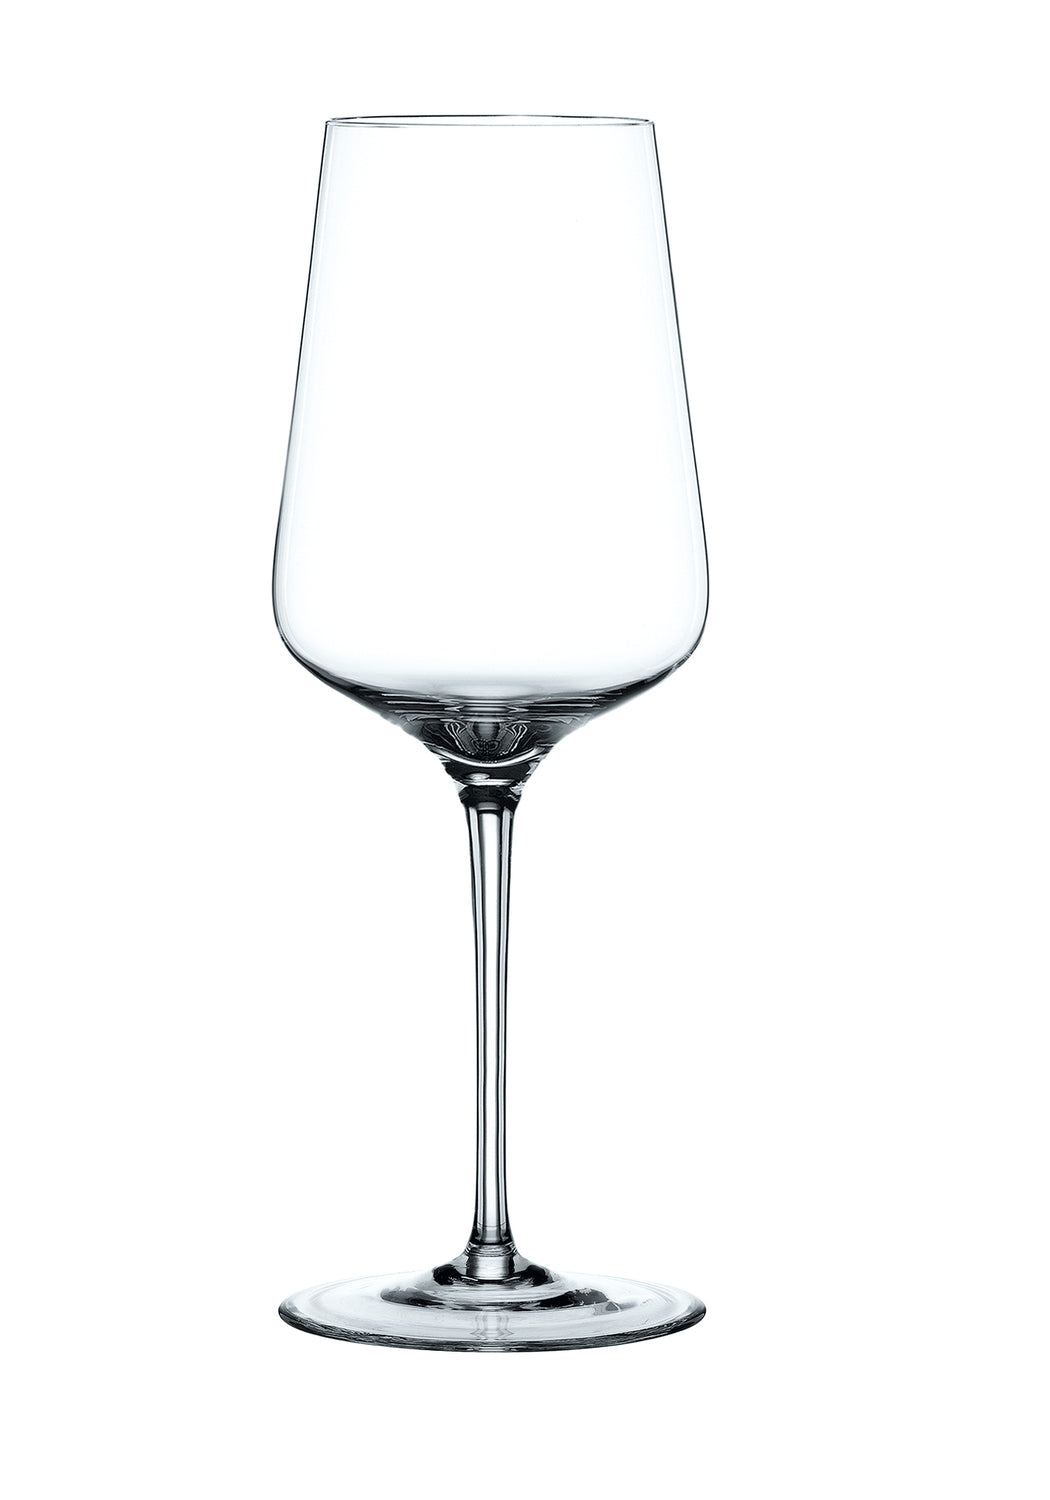 Nachtmann ViNova Red Wine glasses, set of 4